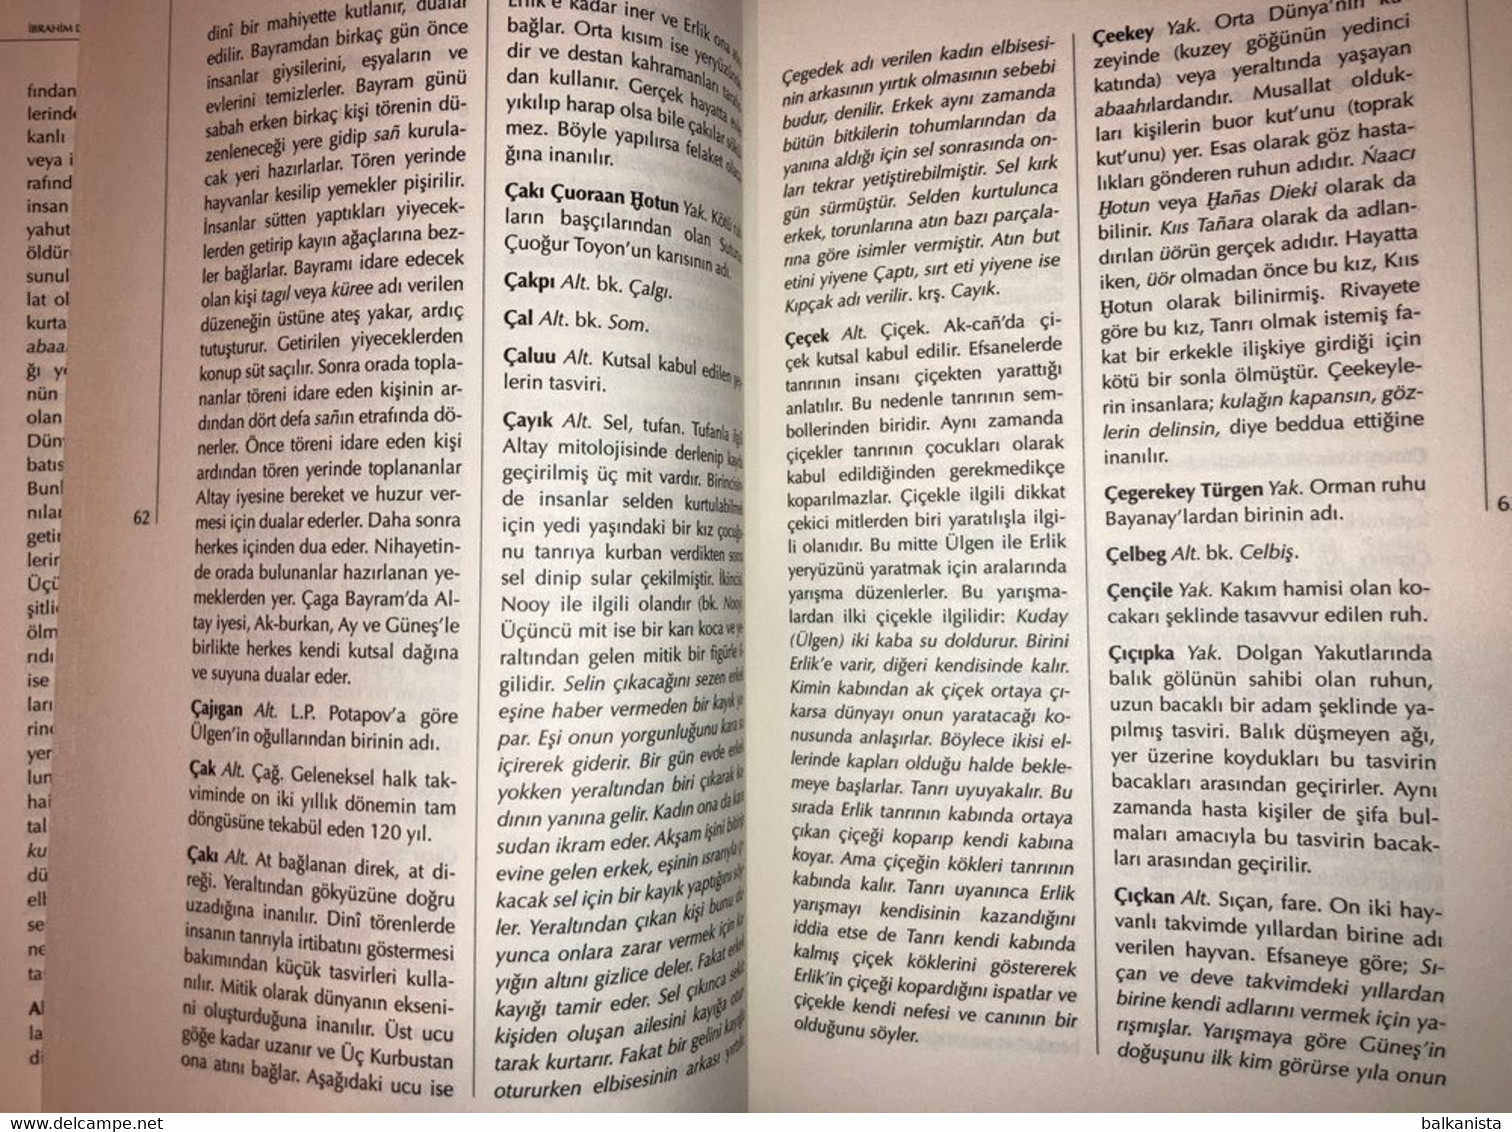 Turk Mitoloji Sozlugu - Turkish Turkic Mythology  Dictionary - Dictionnaires